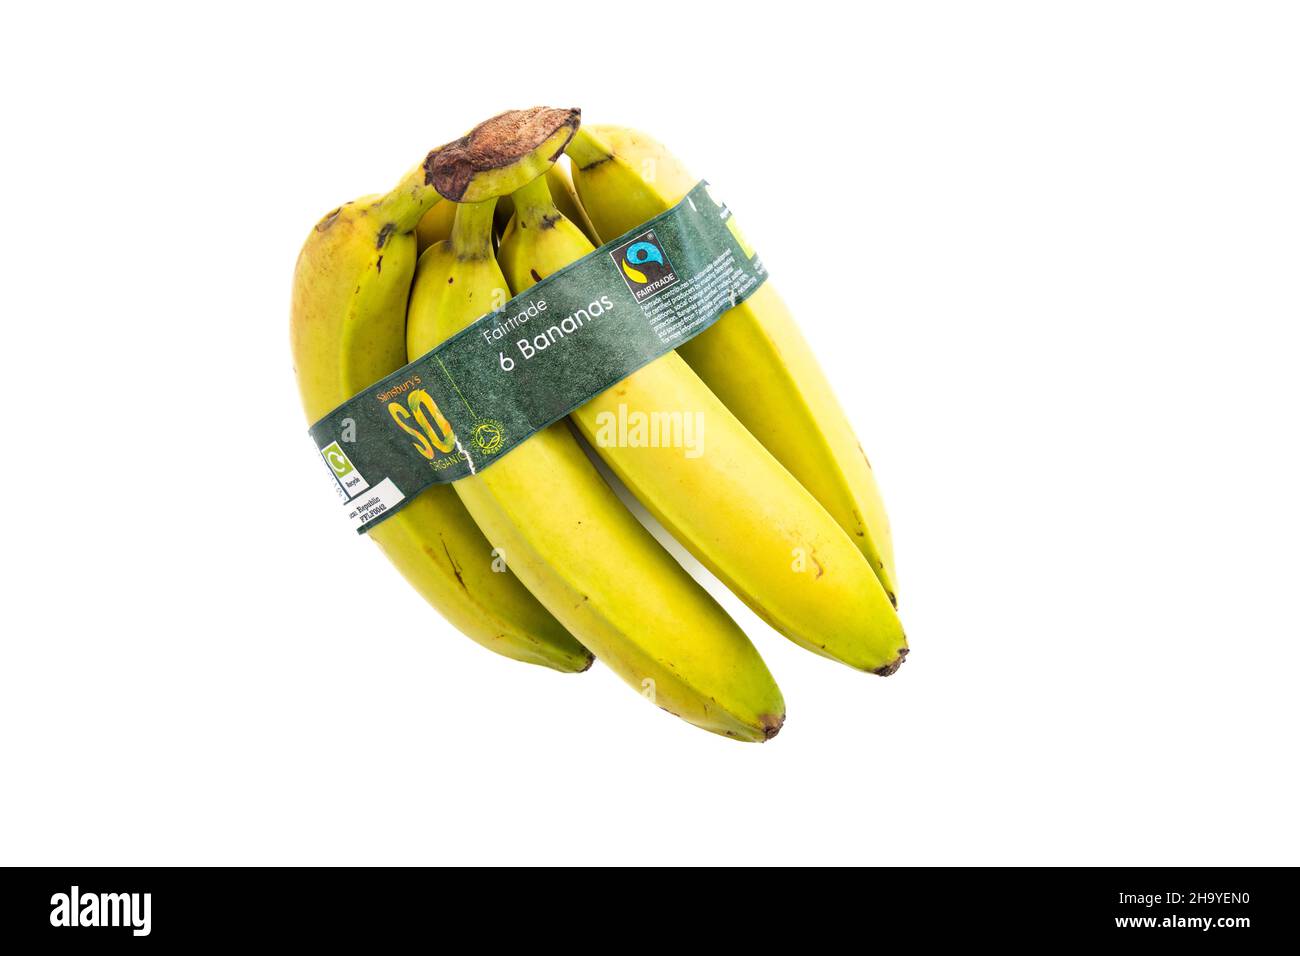 Bananen - Bund von 6 Bio-Fairtrade-Bananen mit Papier recyclebare  Verpackung - UK Stockfotografie - Alamy